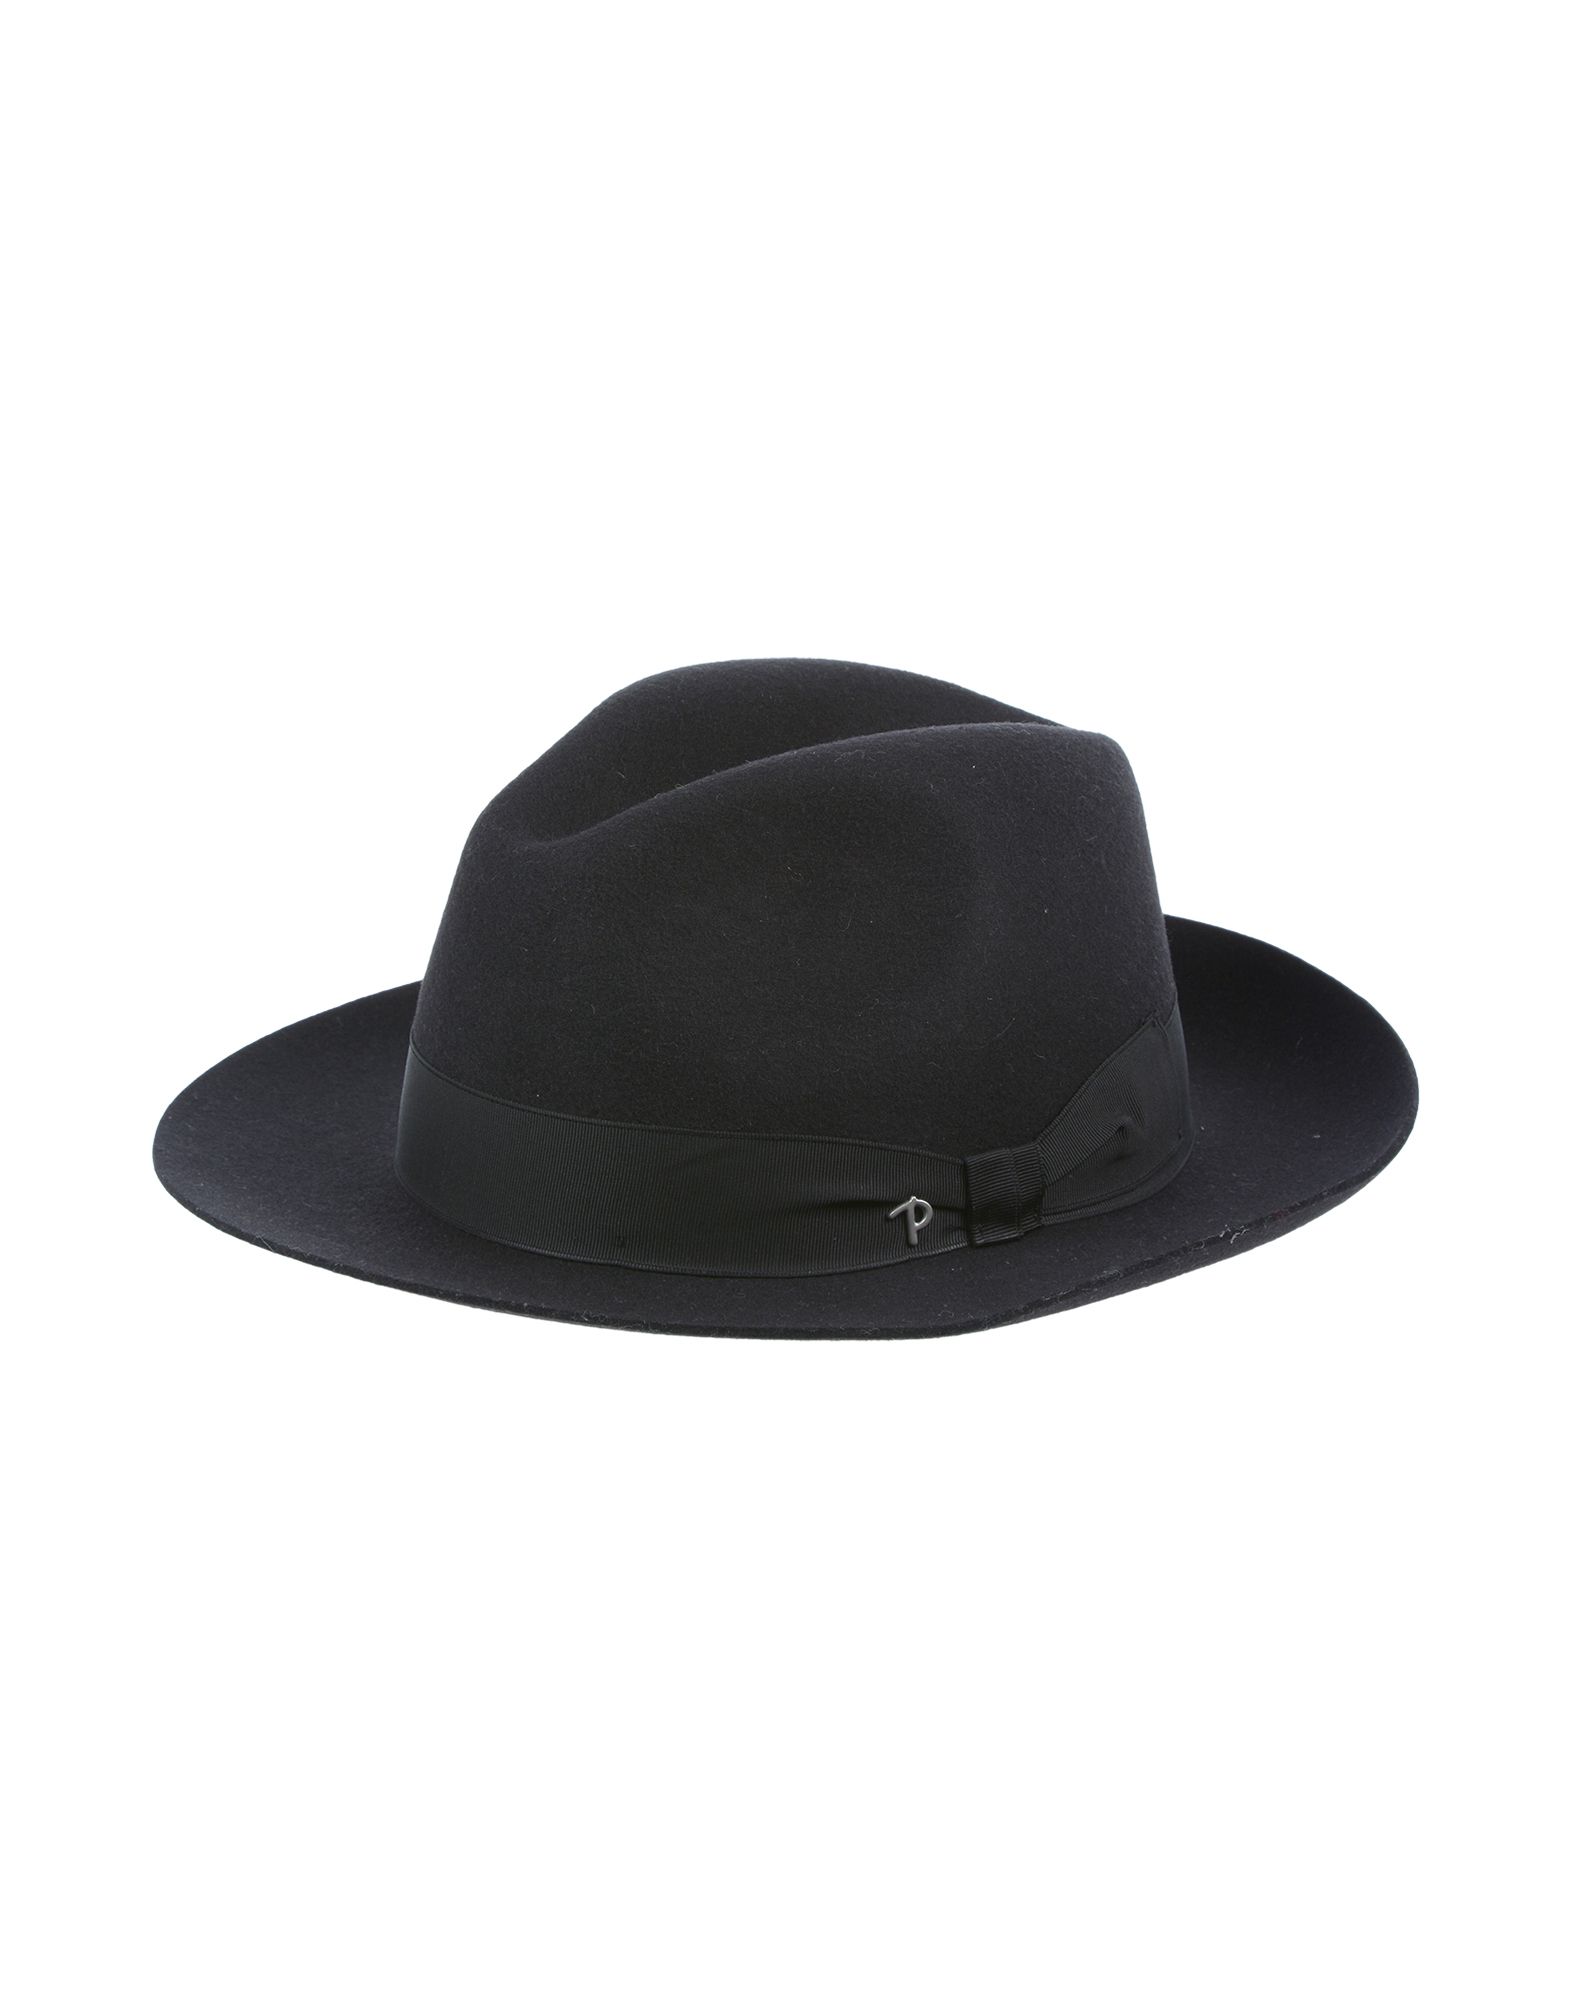 《送料無料》PANIZZA メンズ 帽子 ブラック 55 ウール 100%